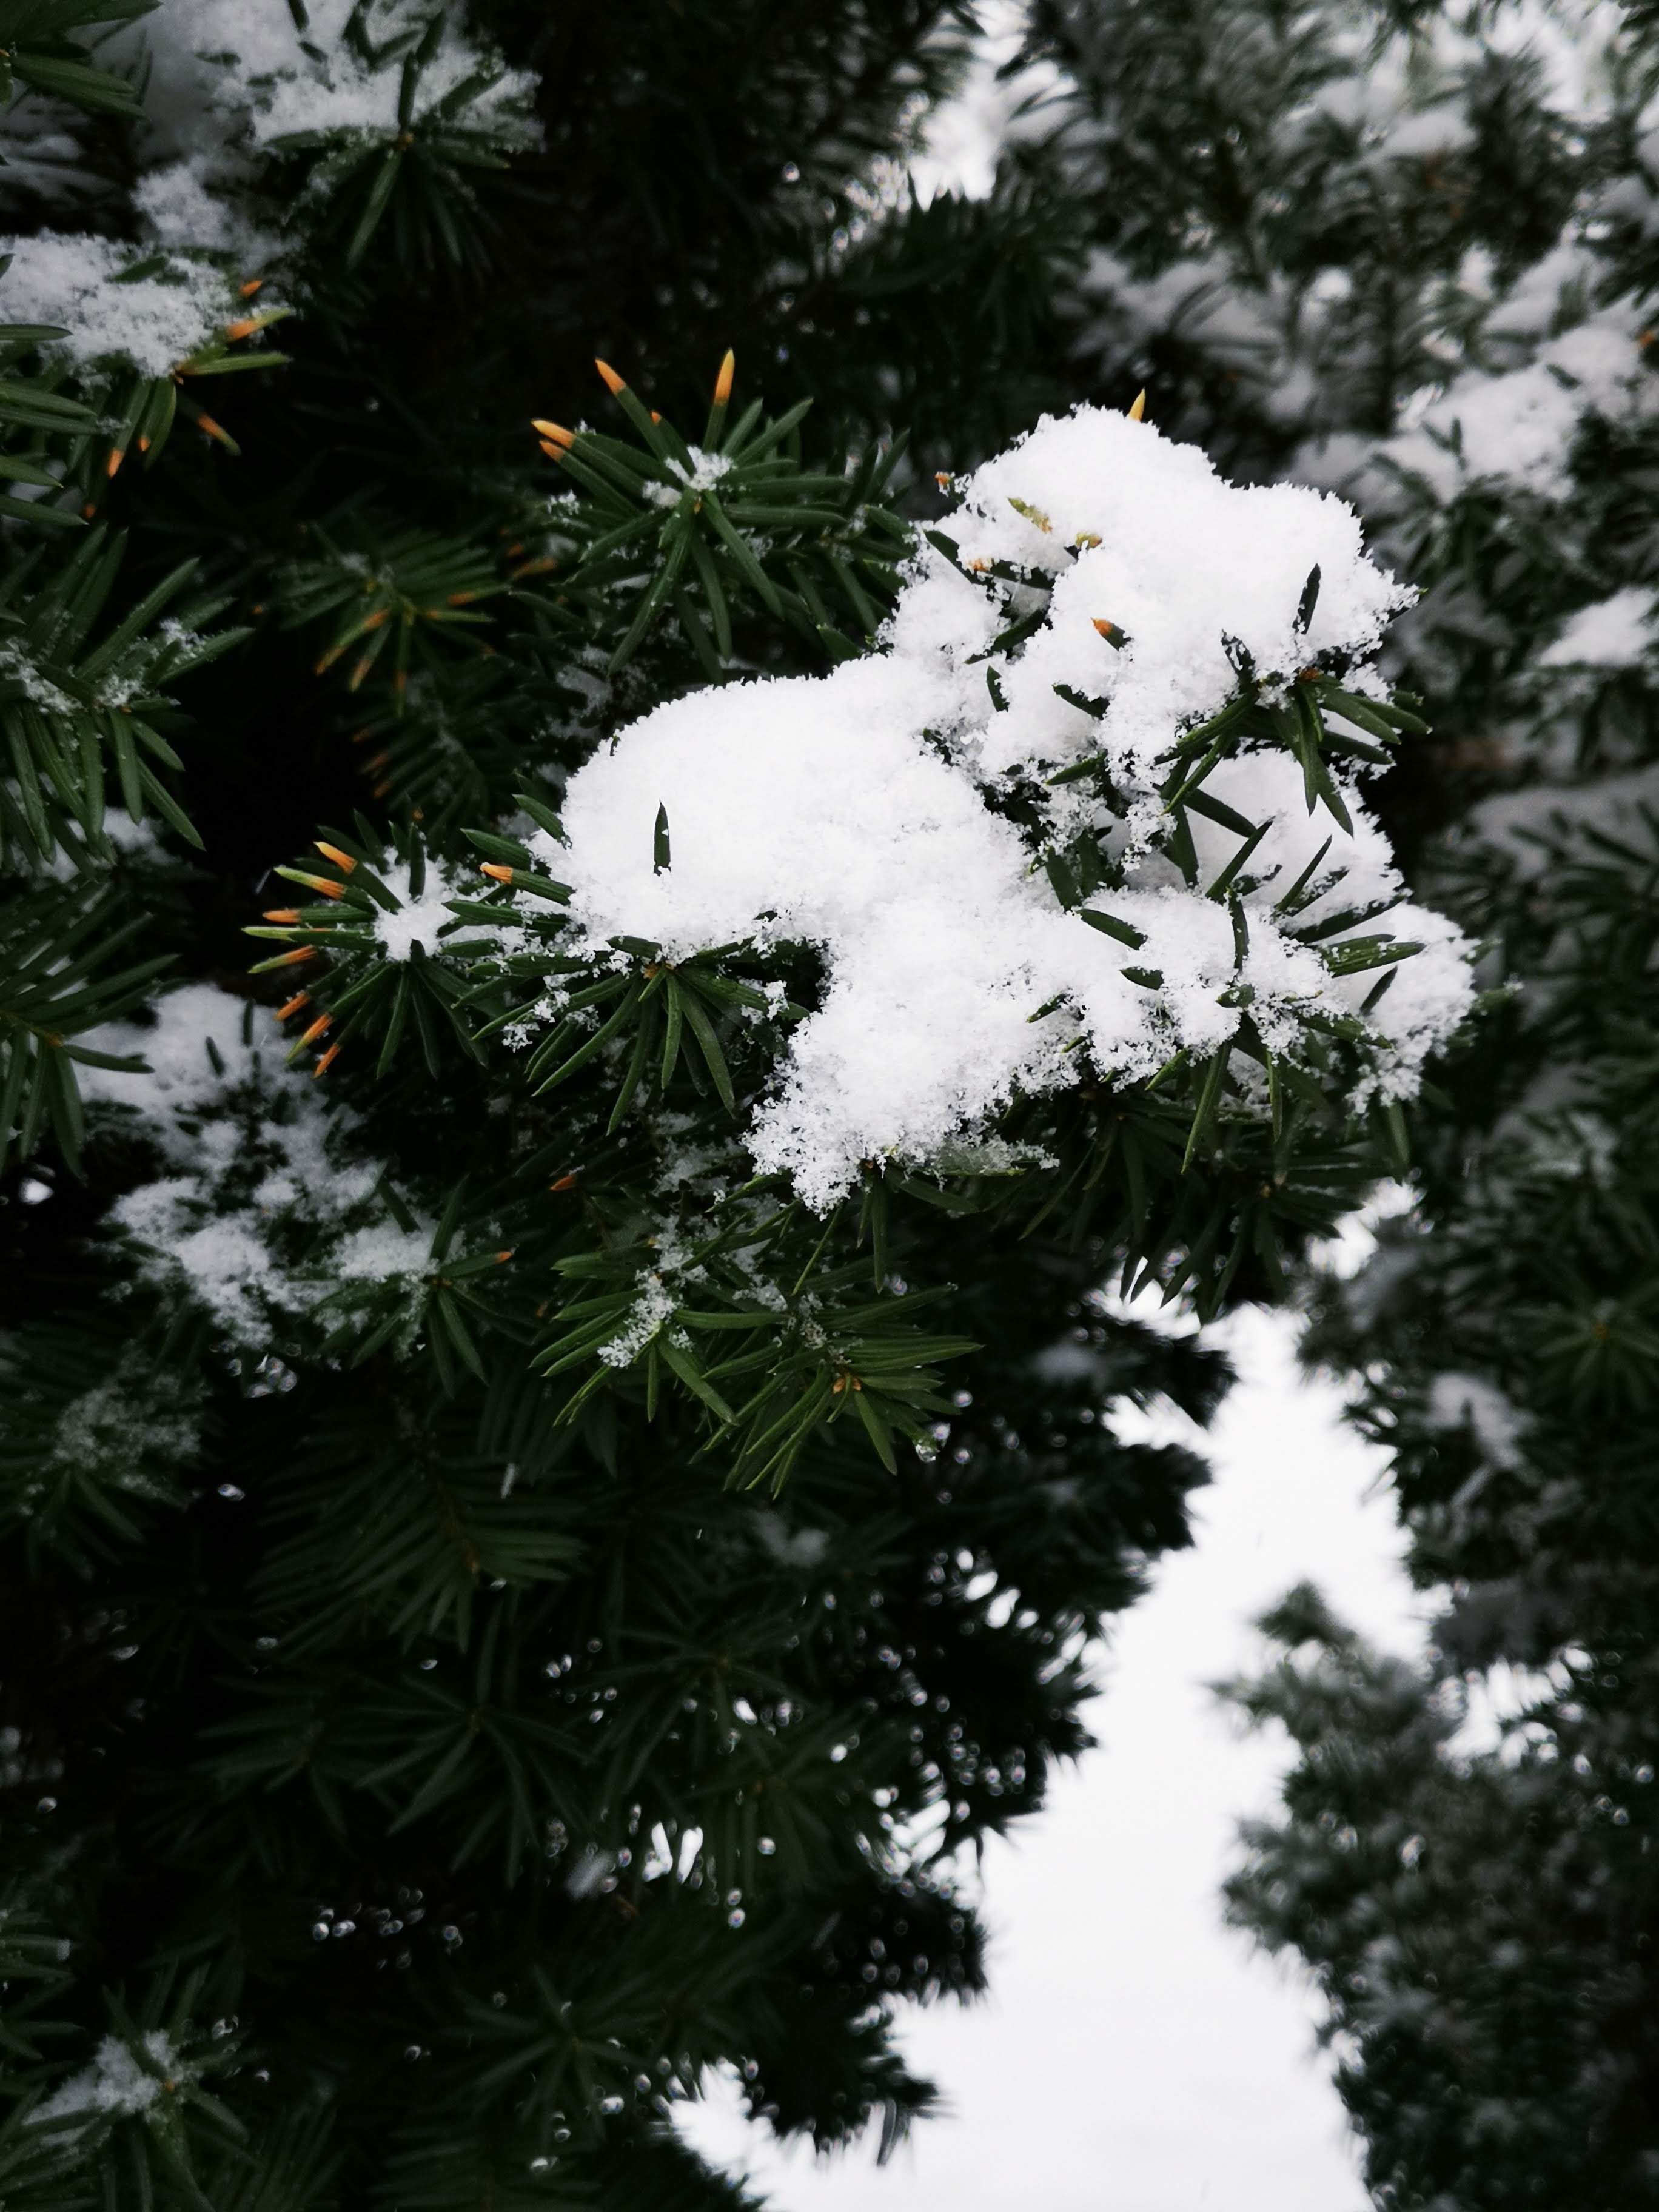 松针是北方冬天能见到的为数不多的绿色